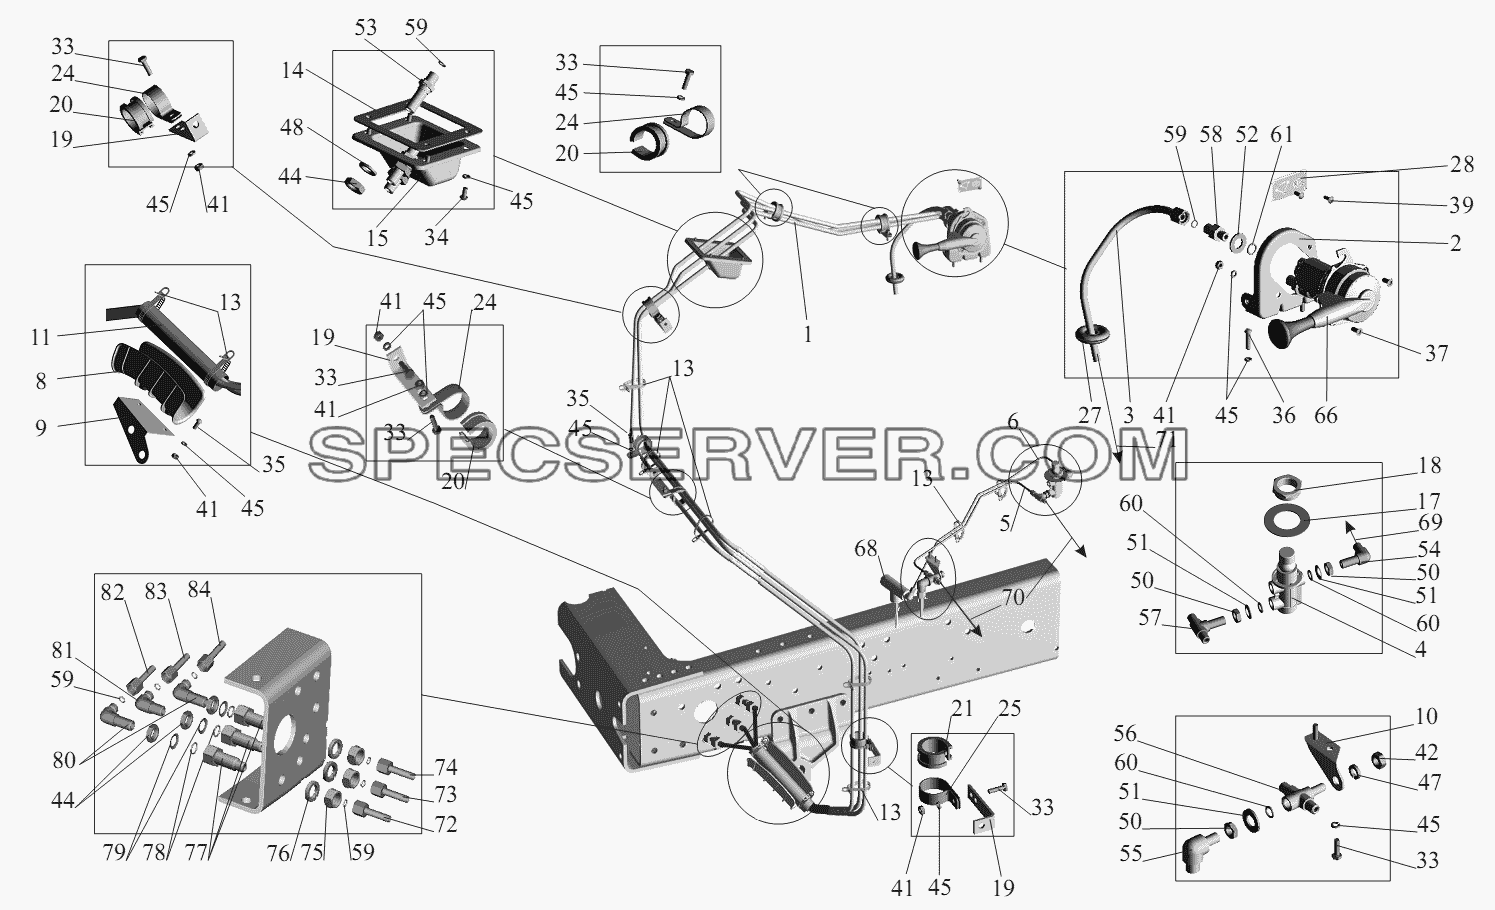 Привод стояночного и моторного тормозов 64255-3537004 для МАЗ-551605 (список запасных частей)